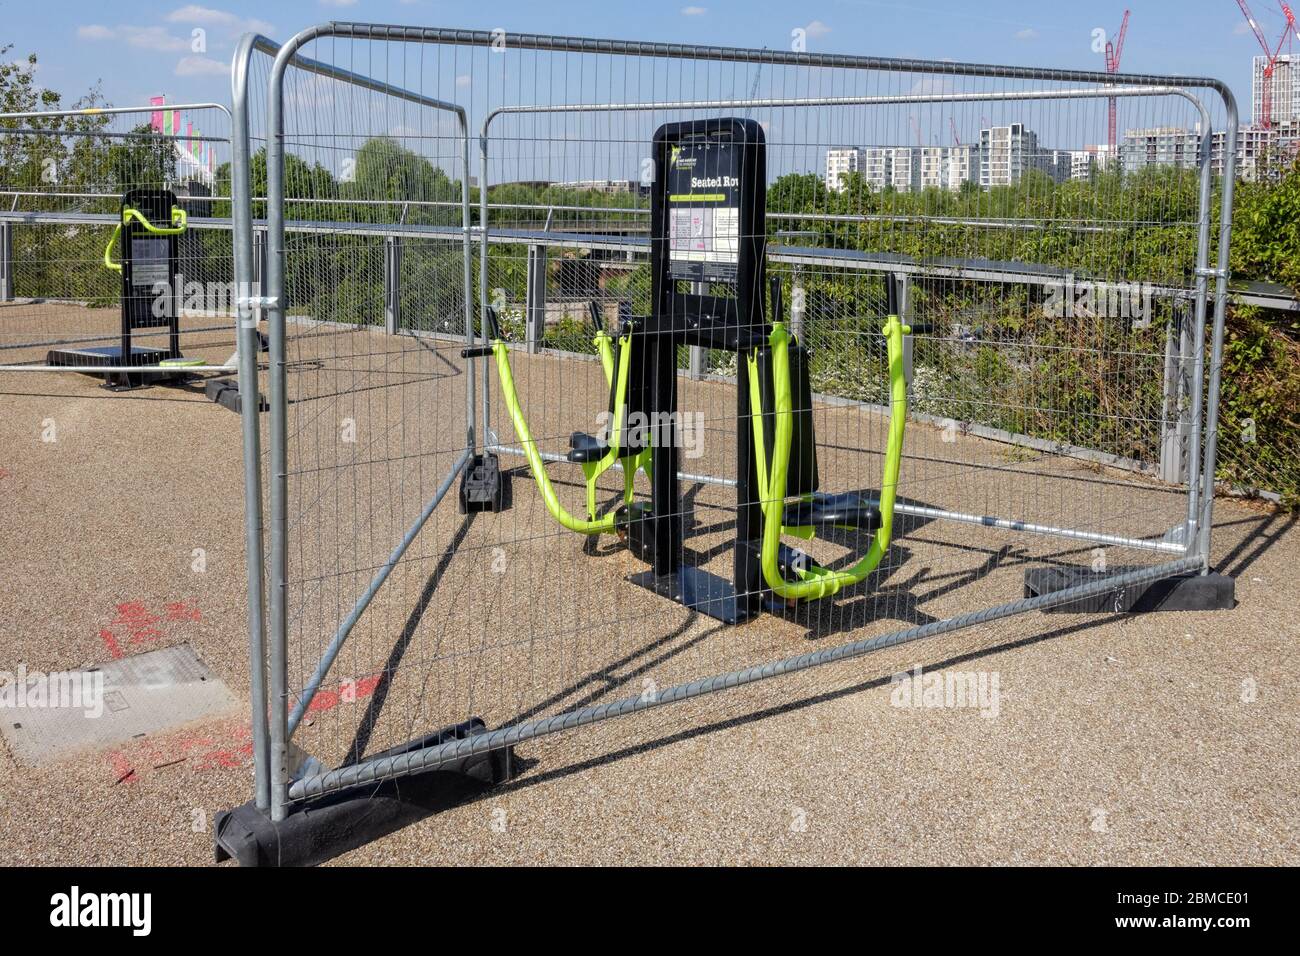 Máquinas de ejercicio al aire libre acordonadas debido al brote de coronavirus, Londres, Inglaterra Reino Unido Foto de stock